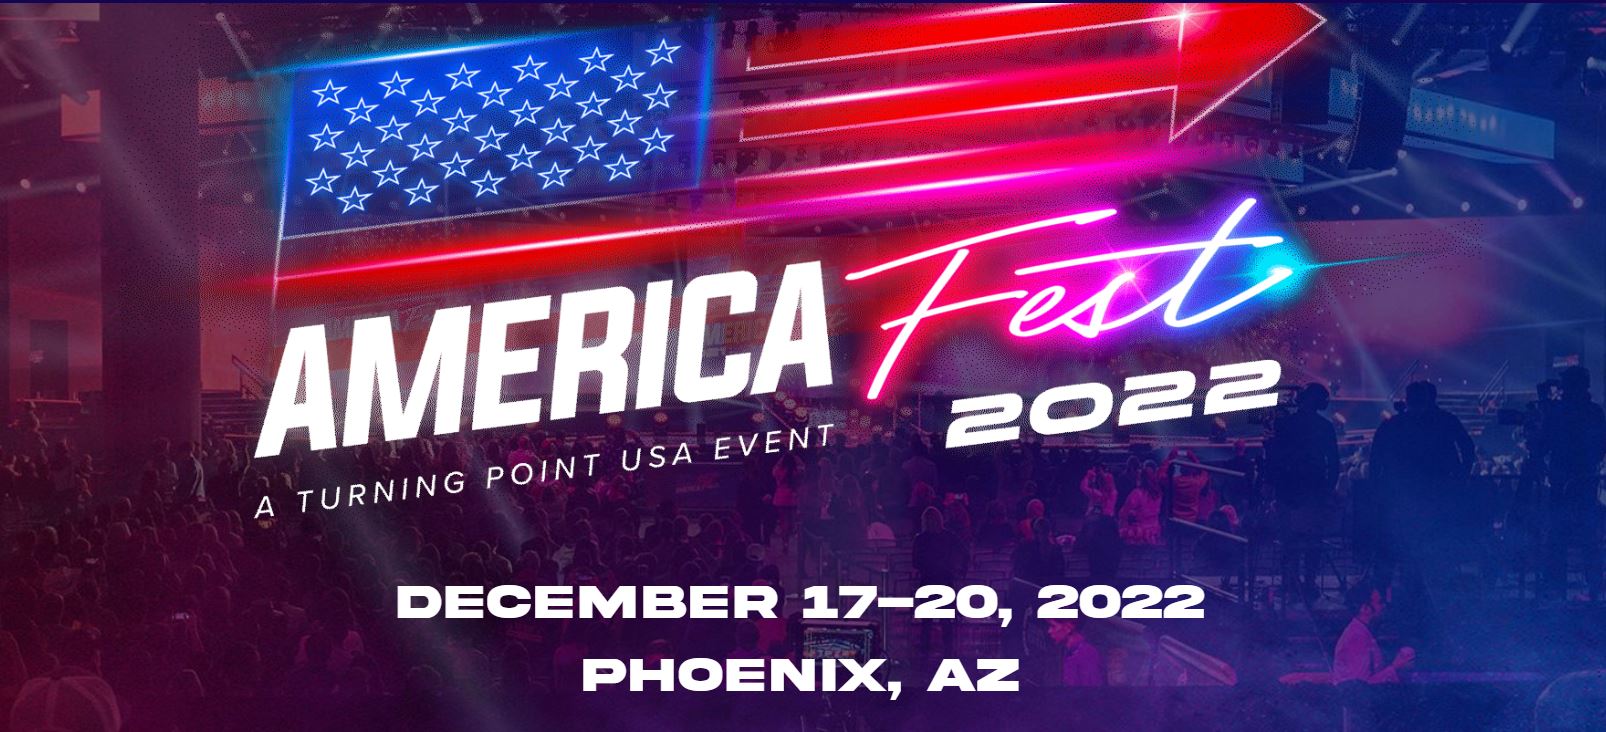 america tour schedule 2022